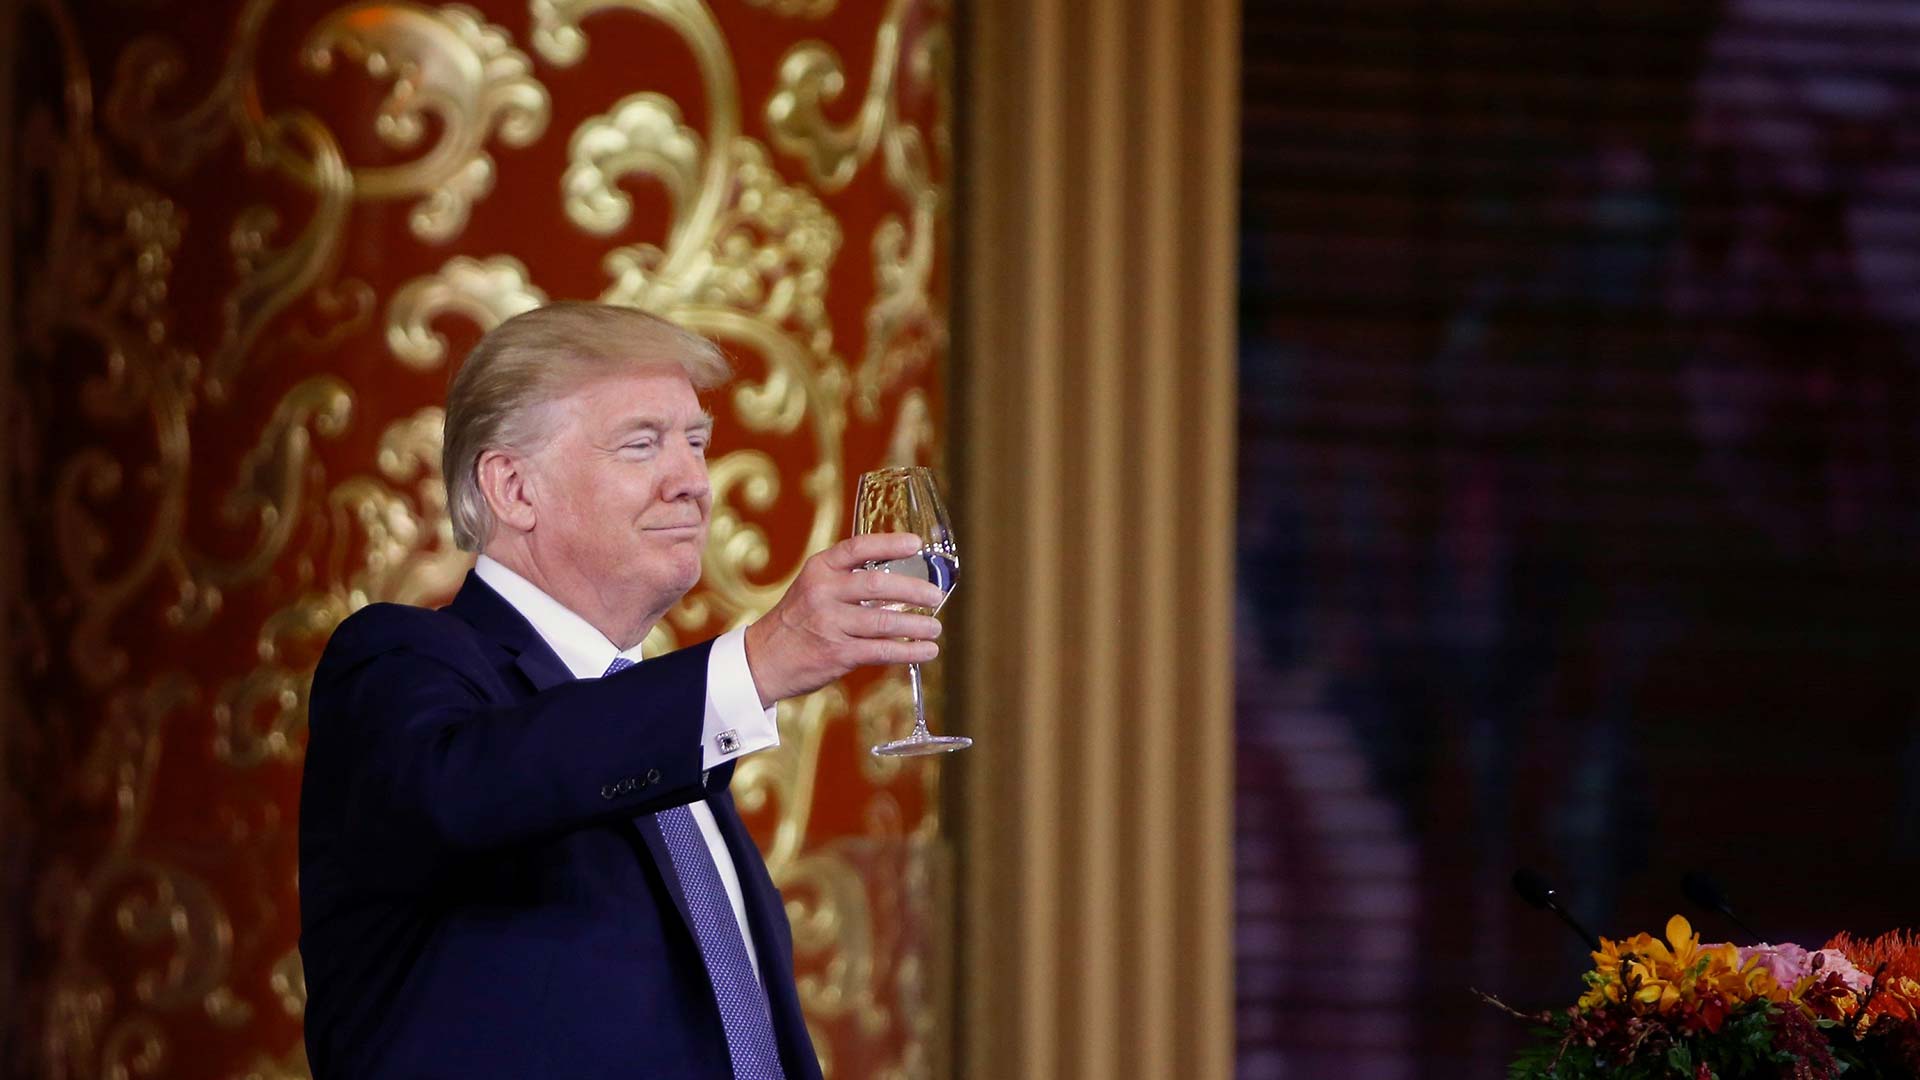 A propósito del viaje de Trump: es tiempo de creerse el cuento chino